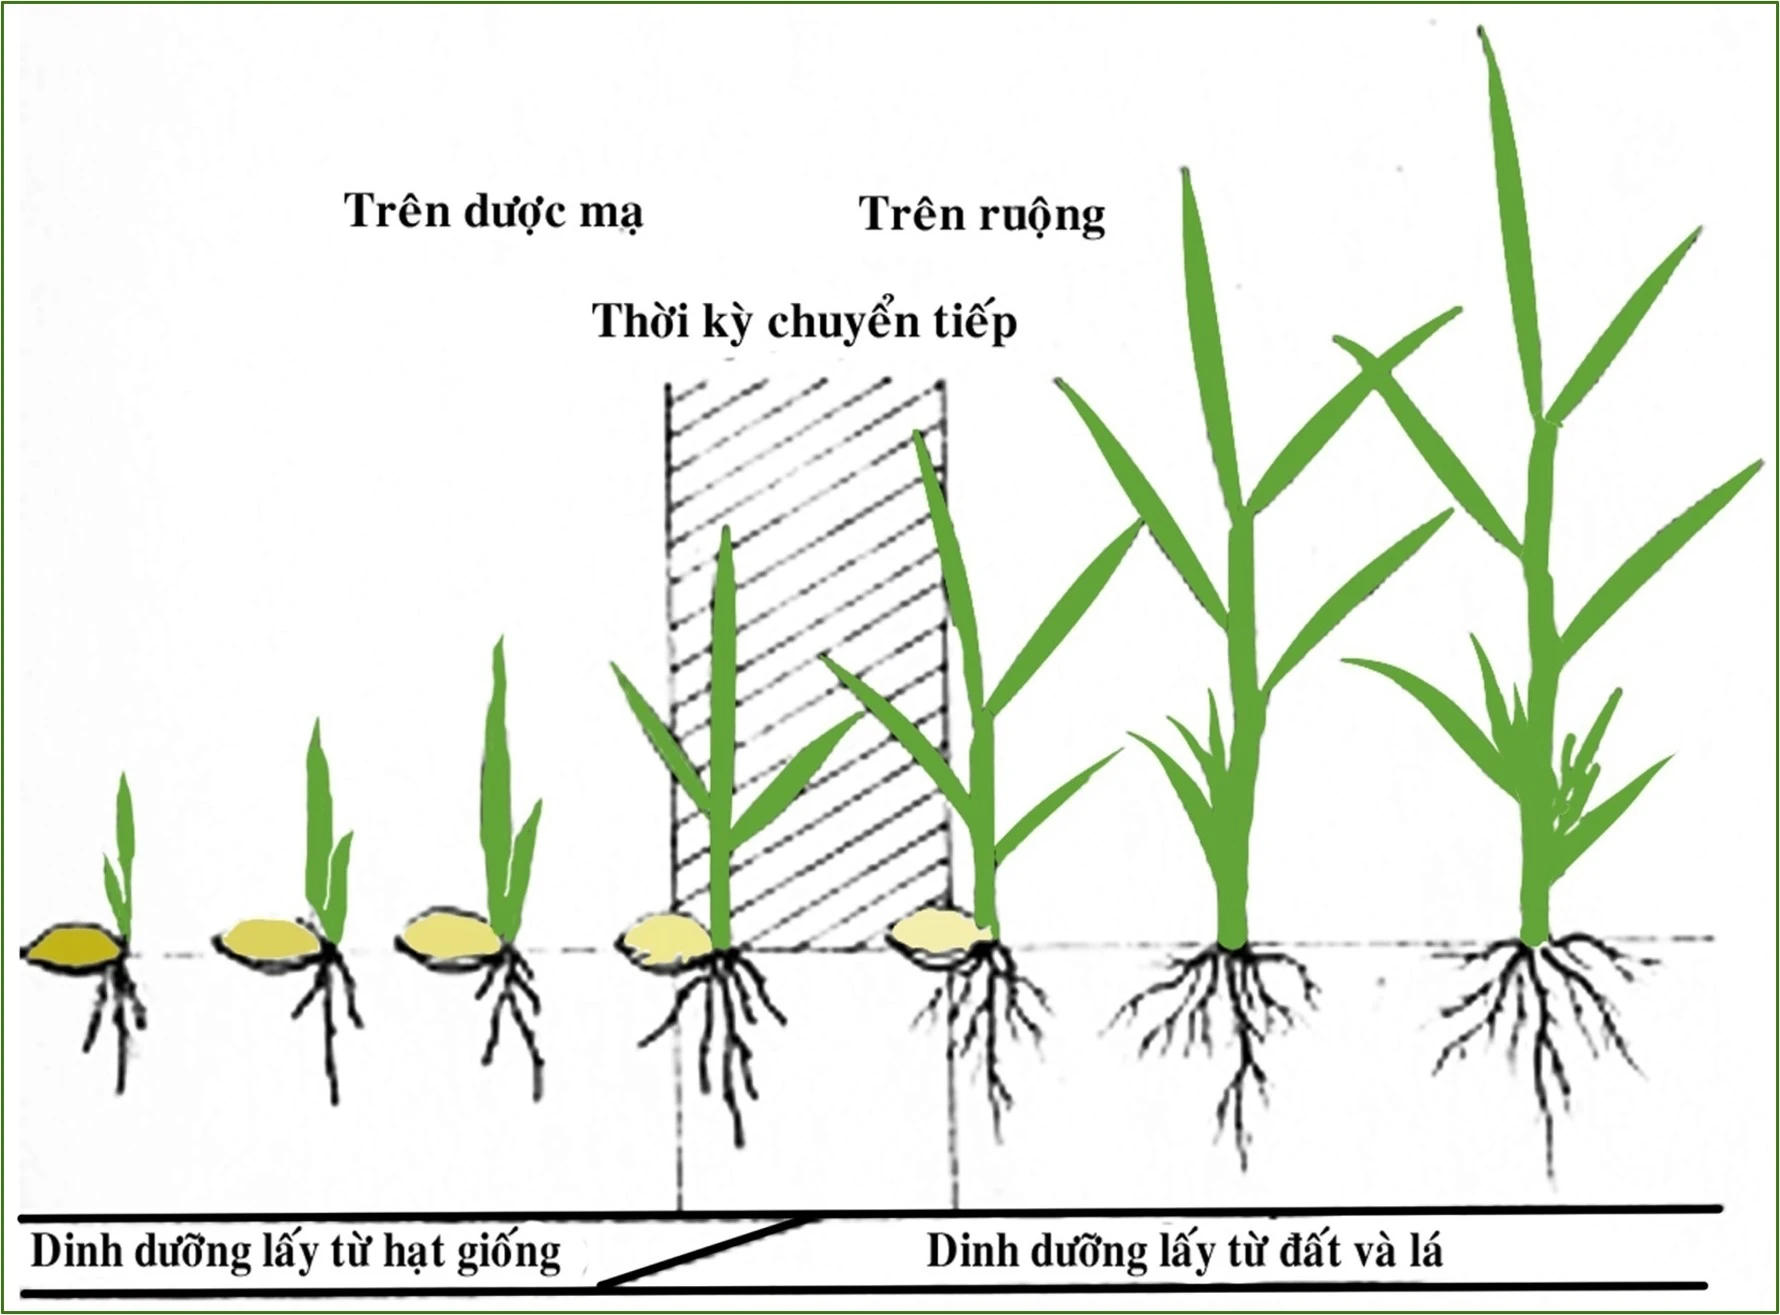 Bạn hiểu thêm về quá trình sinh trưởng của cây lúa nhé, để chăm sóc hợp lý